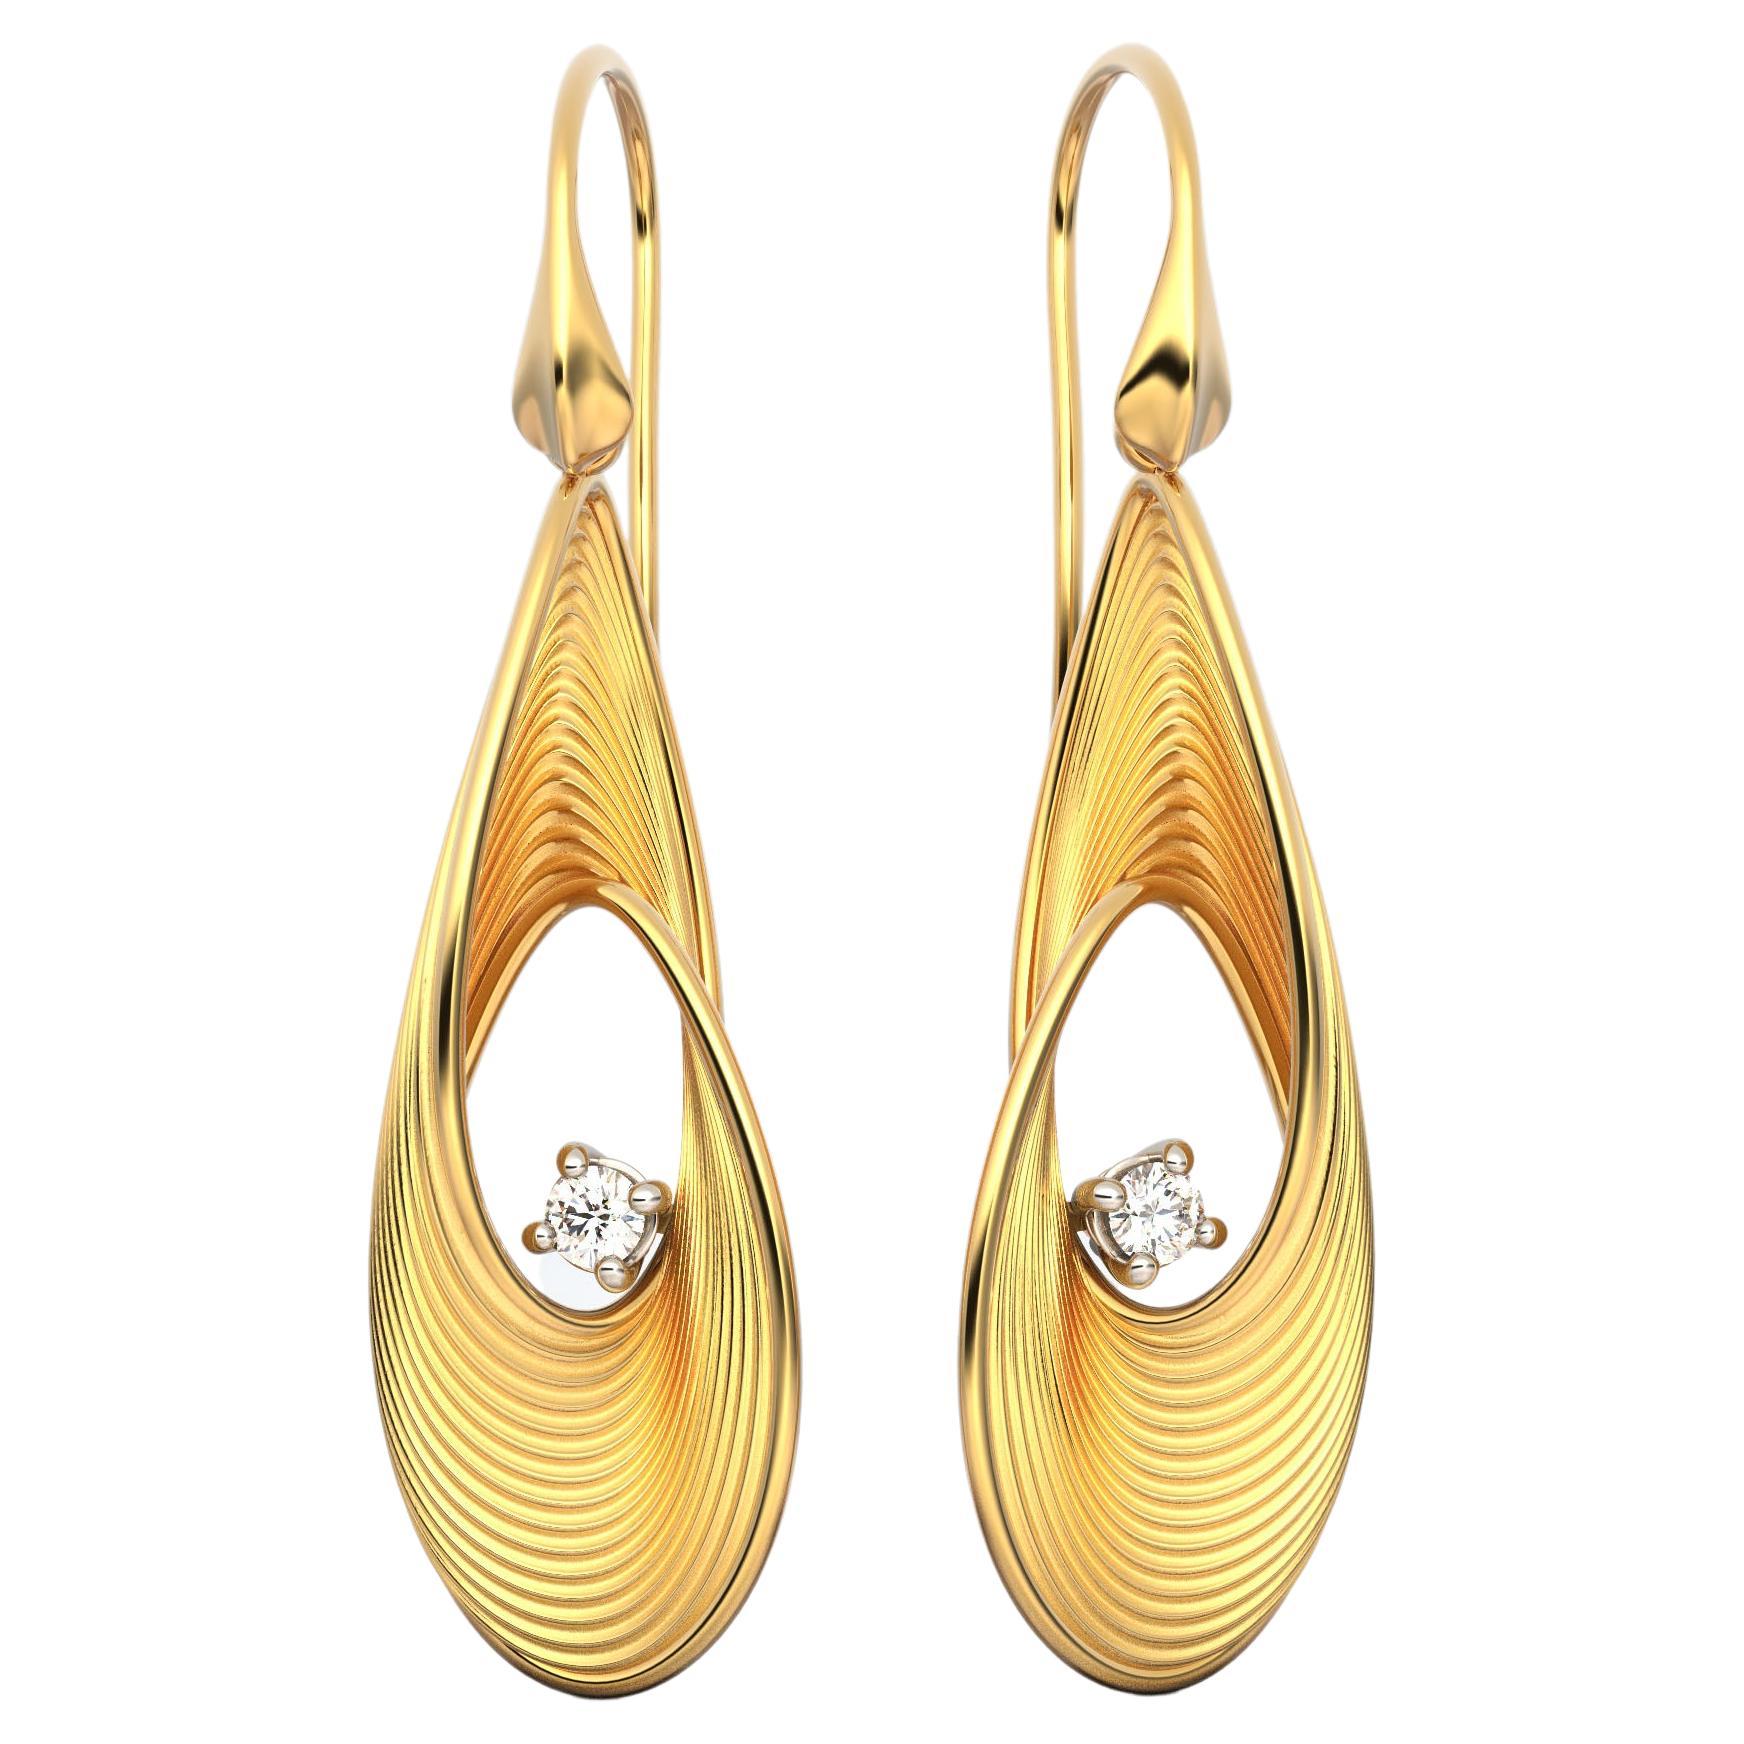 Oltremare Gioielli Diamond Earrings, Dangle Drop Earrings in 18k Solid Gold